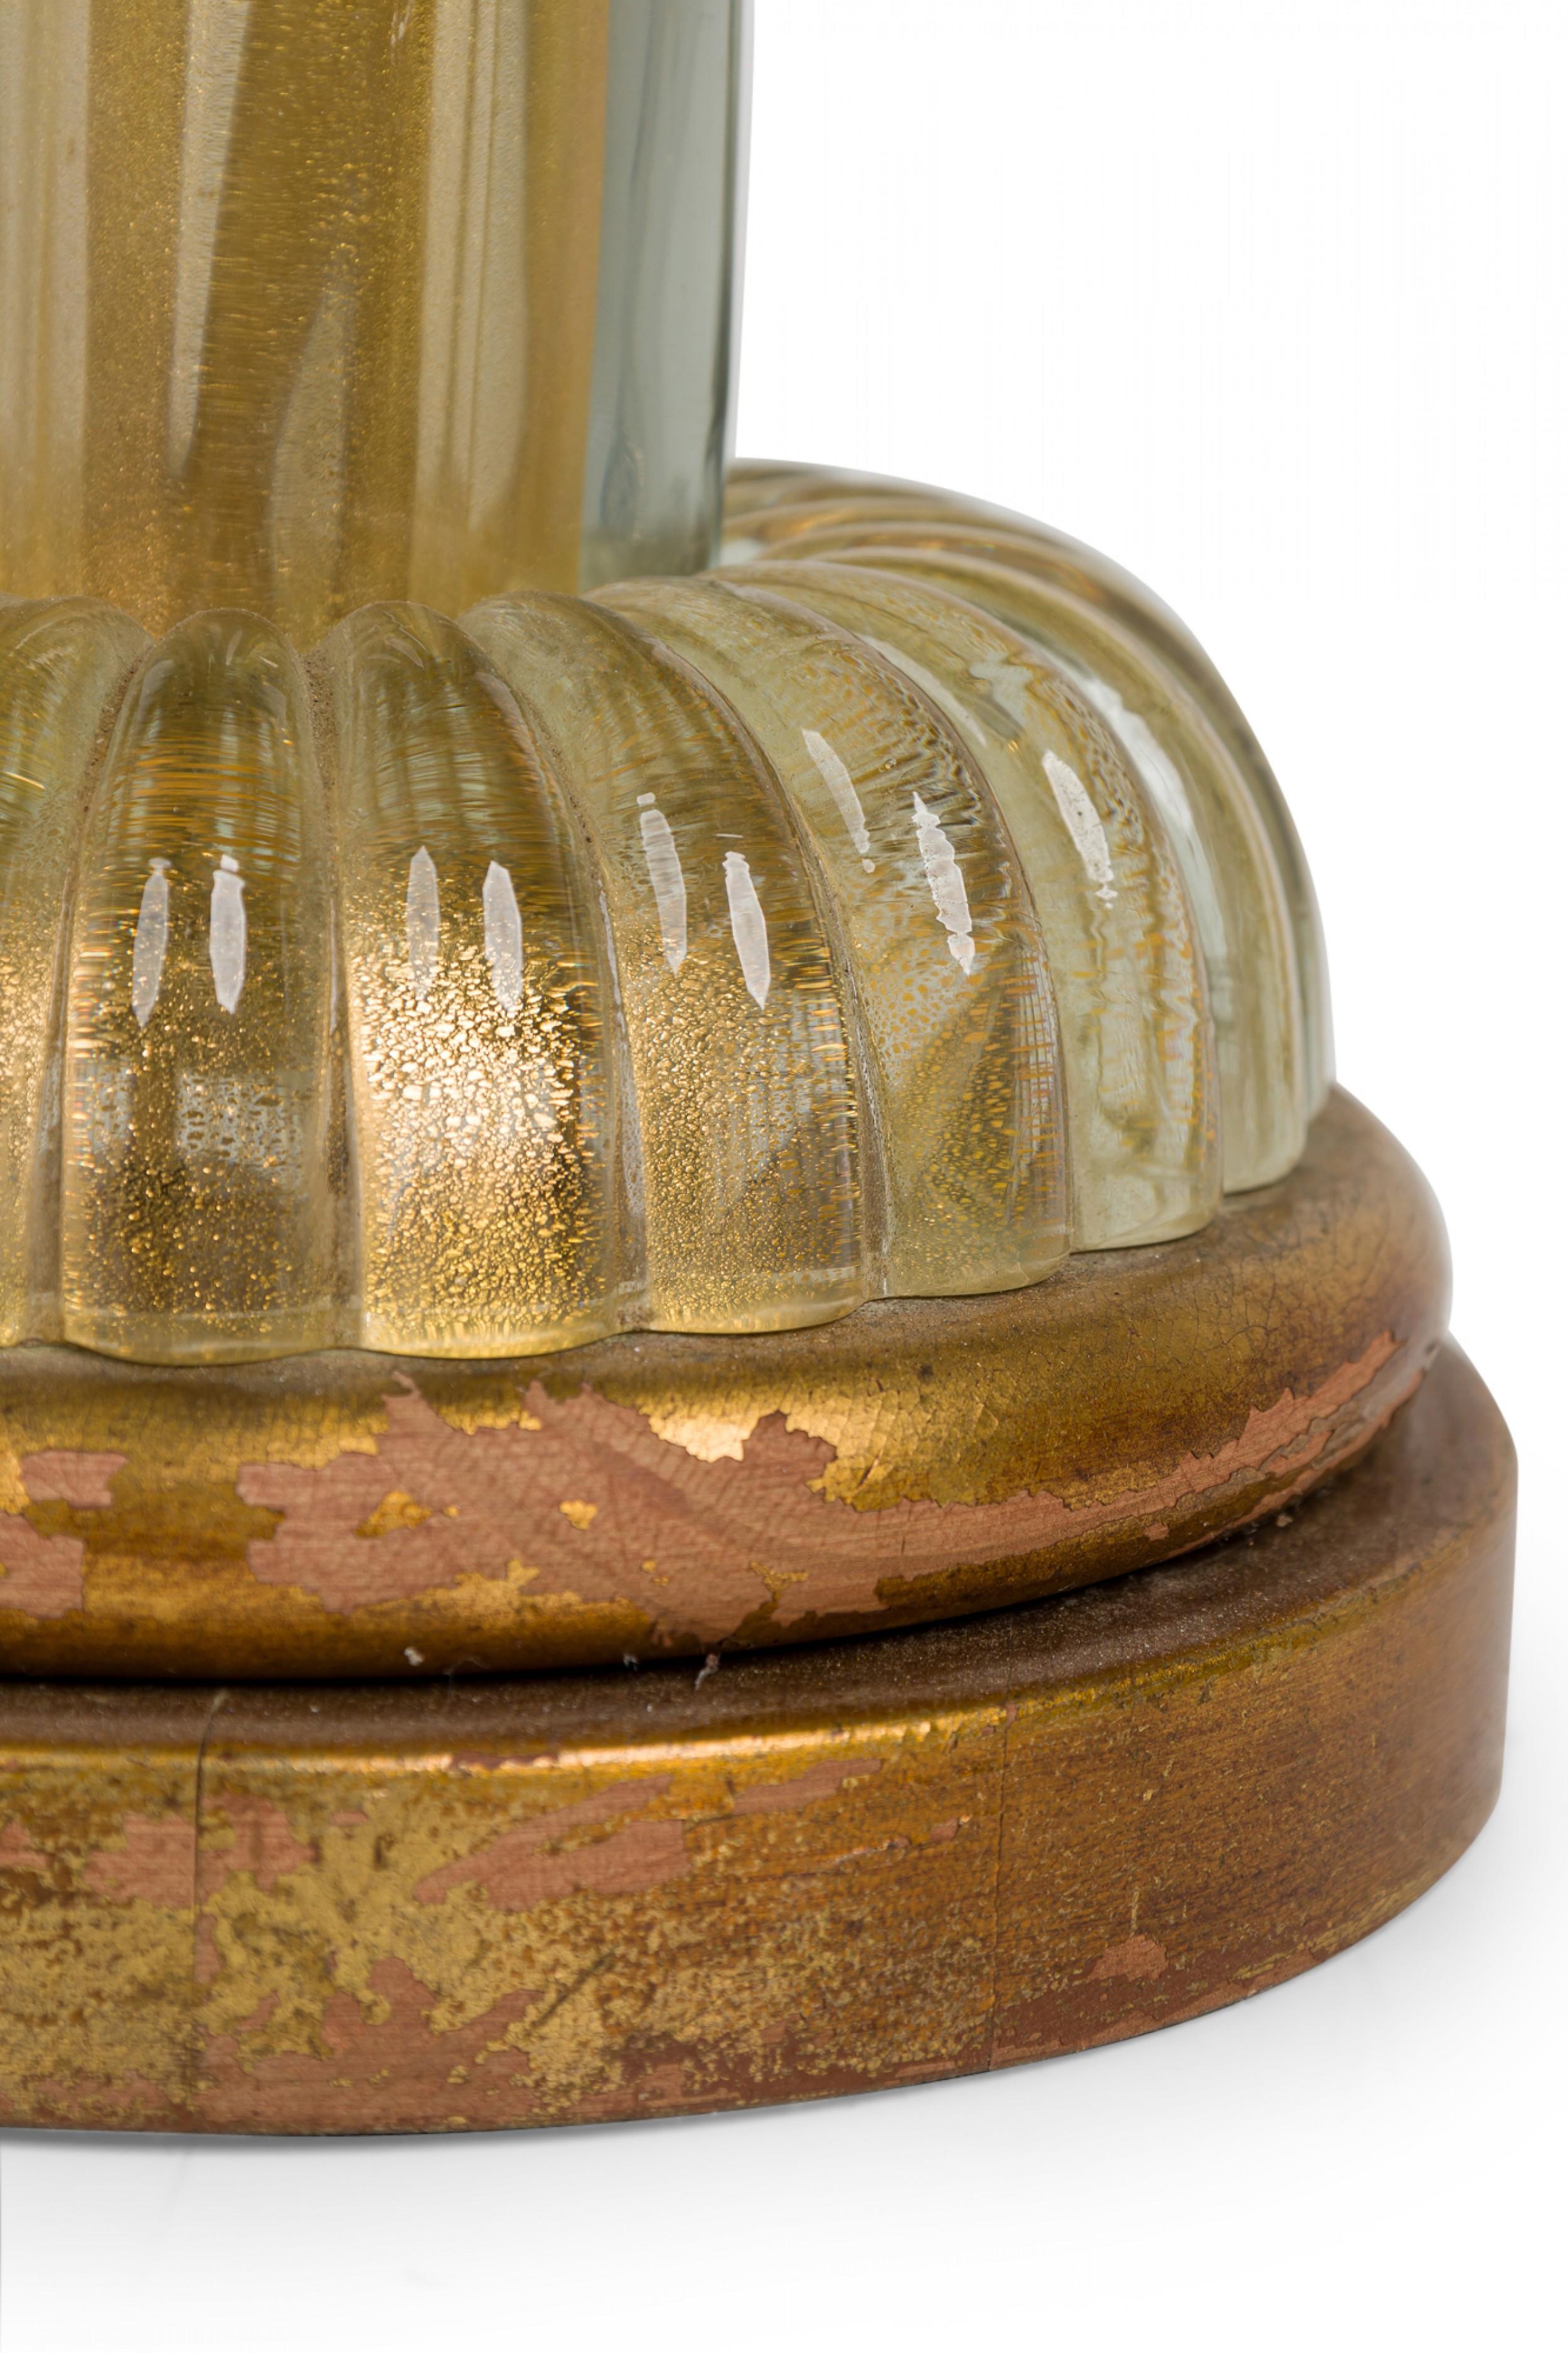 Lampe de table en verre italienne du milieu du siècle en forme de colonne torsadée avec une tige en laiton prolongée surmontée d'un fleuron en forme de coupe renversée, deux prises de courant fonctionnelles avec des tirettes perlées, et un pied en